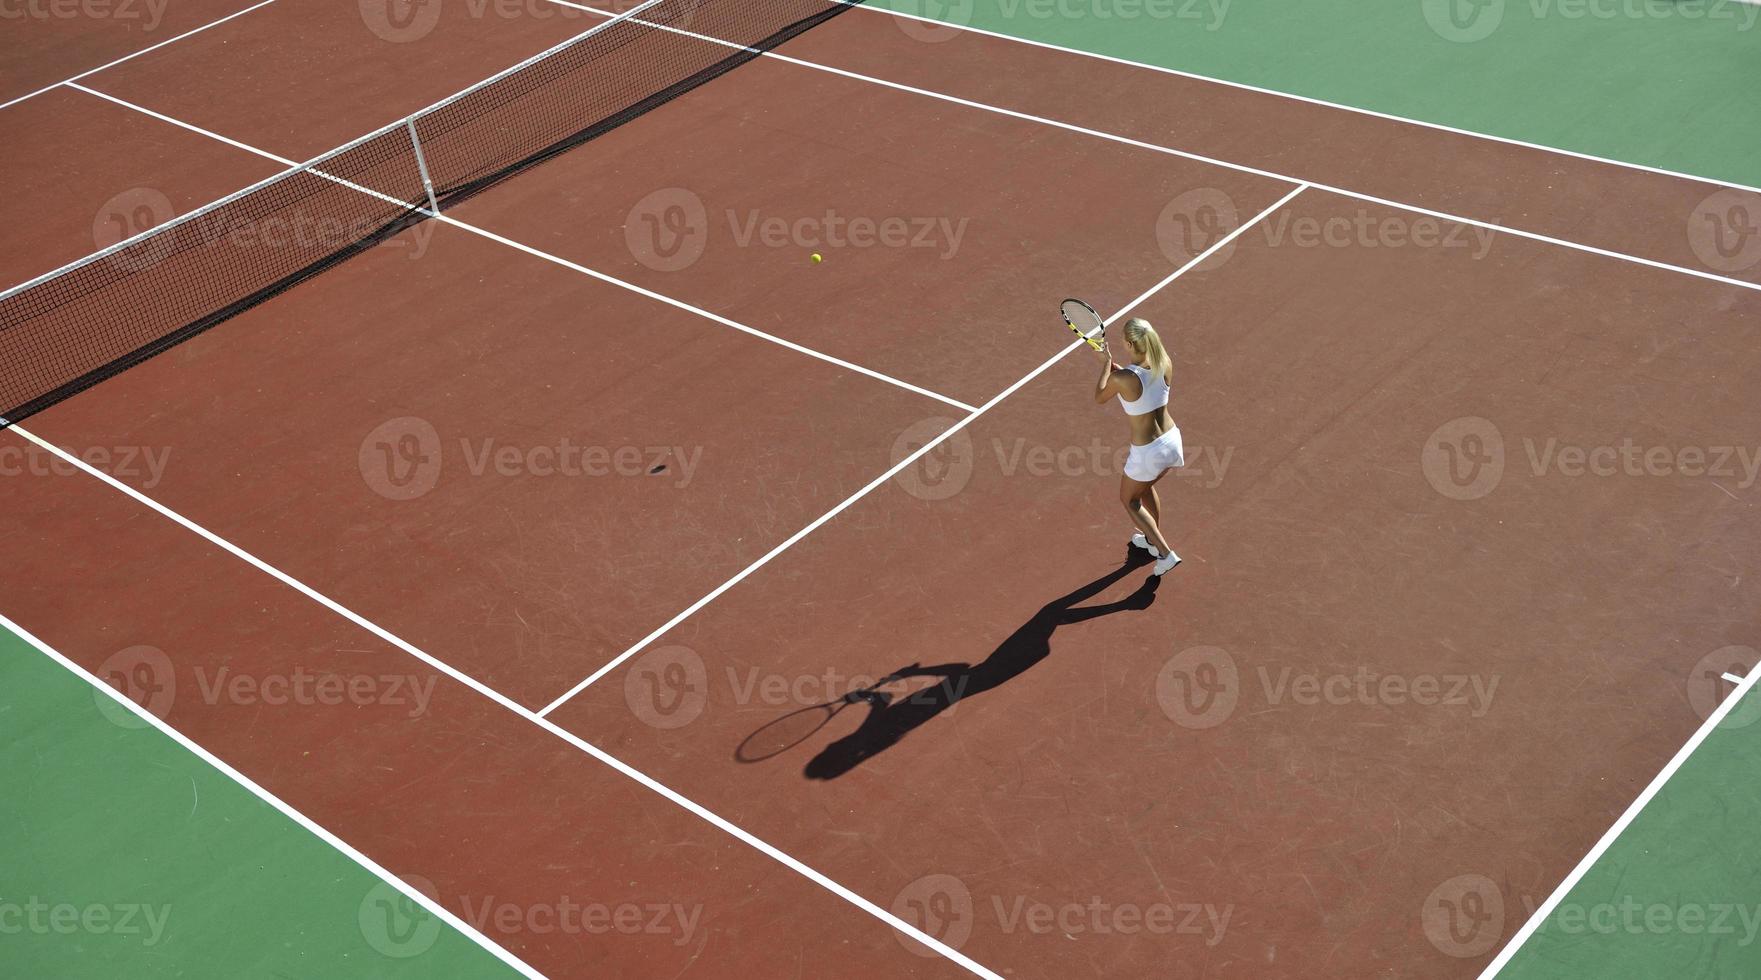 jeune femme jouer au tennis en plein air photo